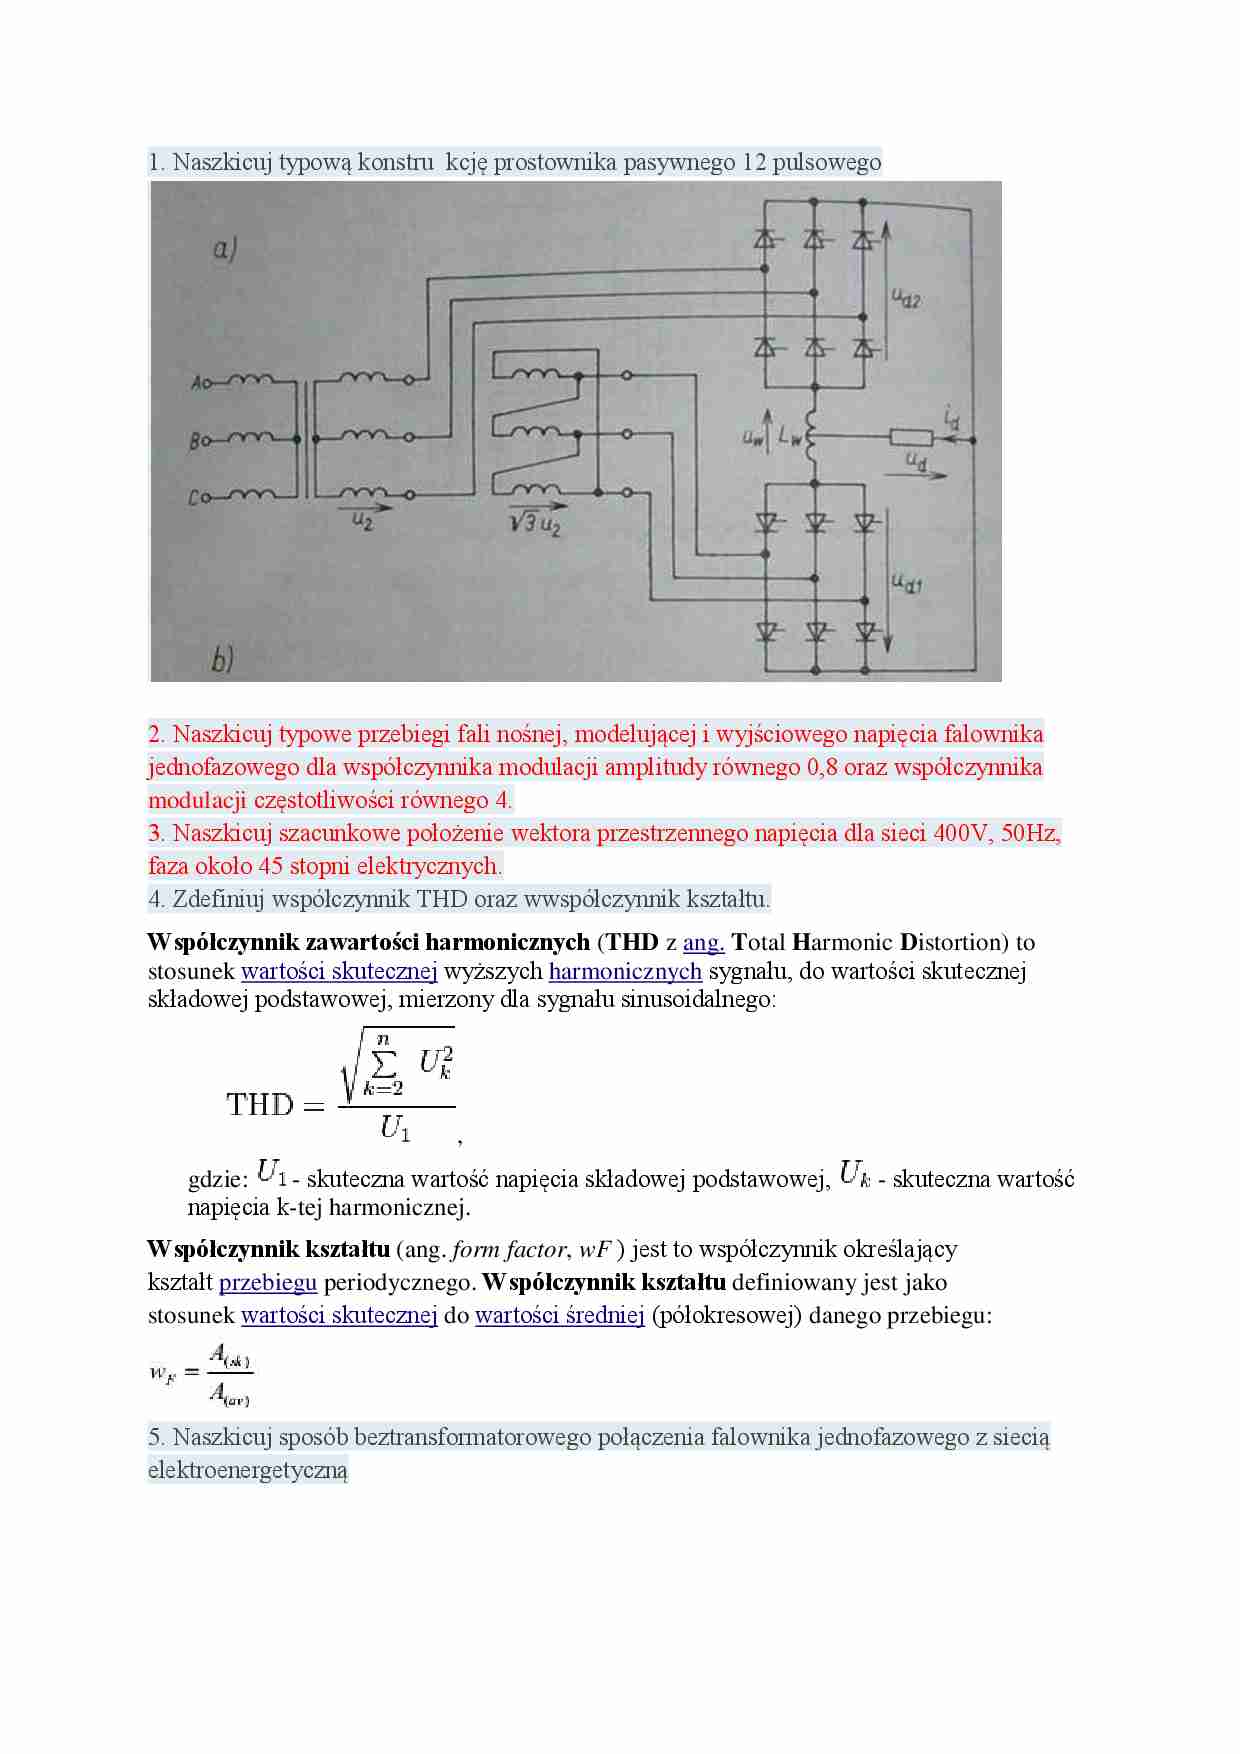 Zaliczenie z wykładów - elektronika i energoelektronika - strona 1